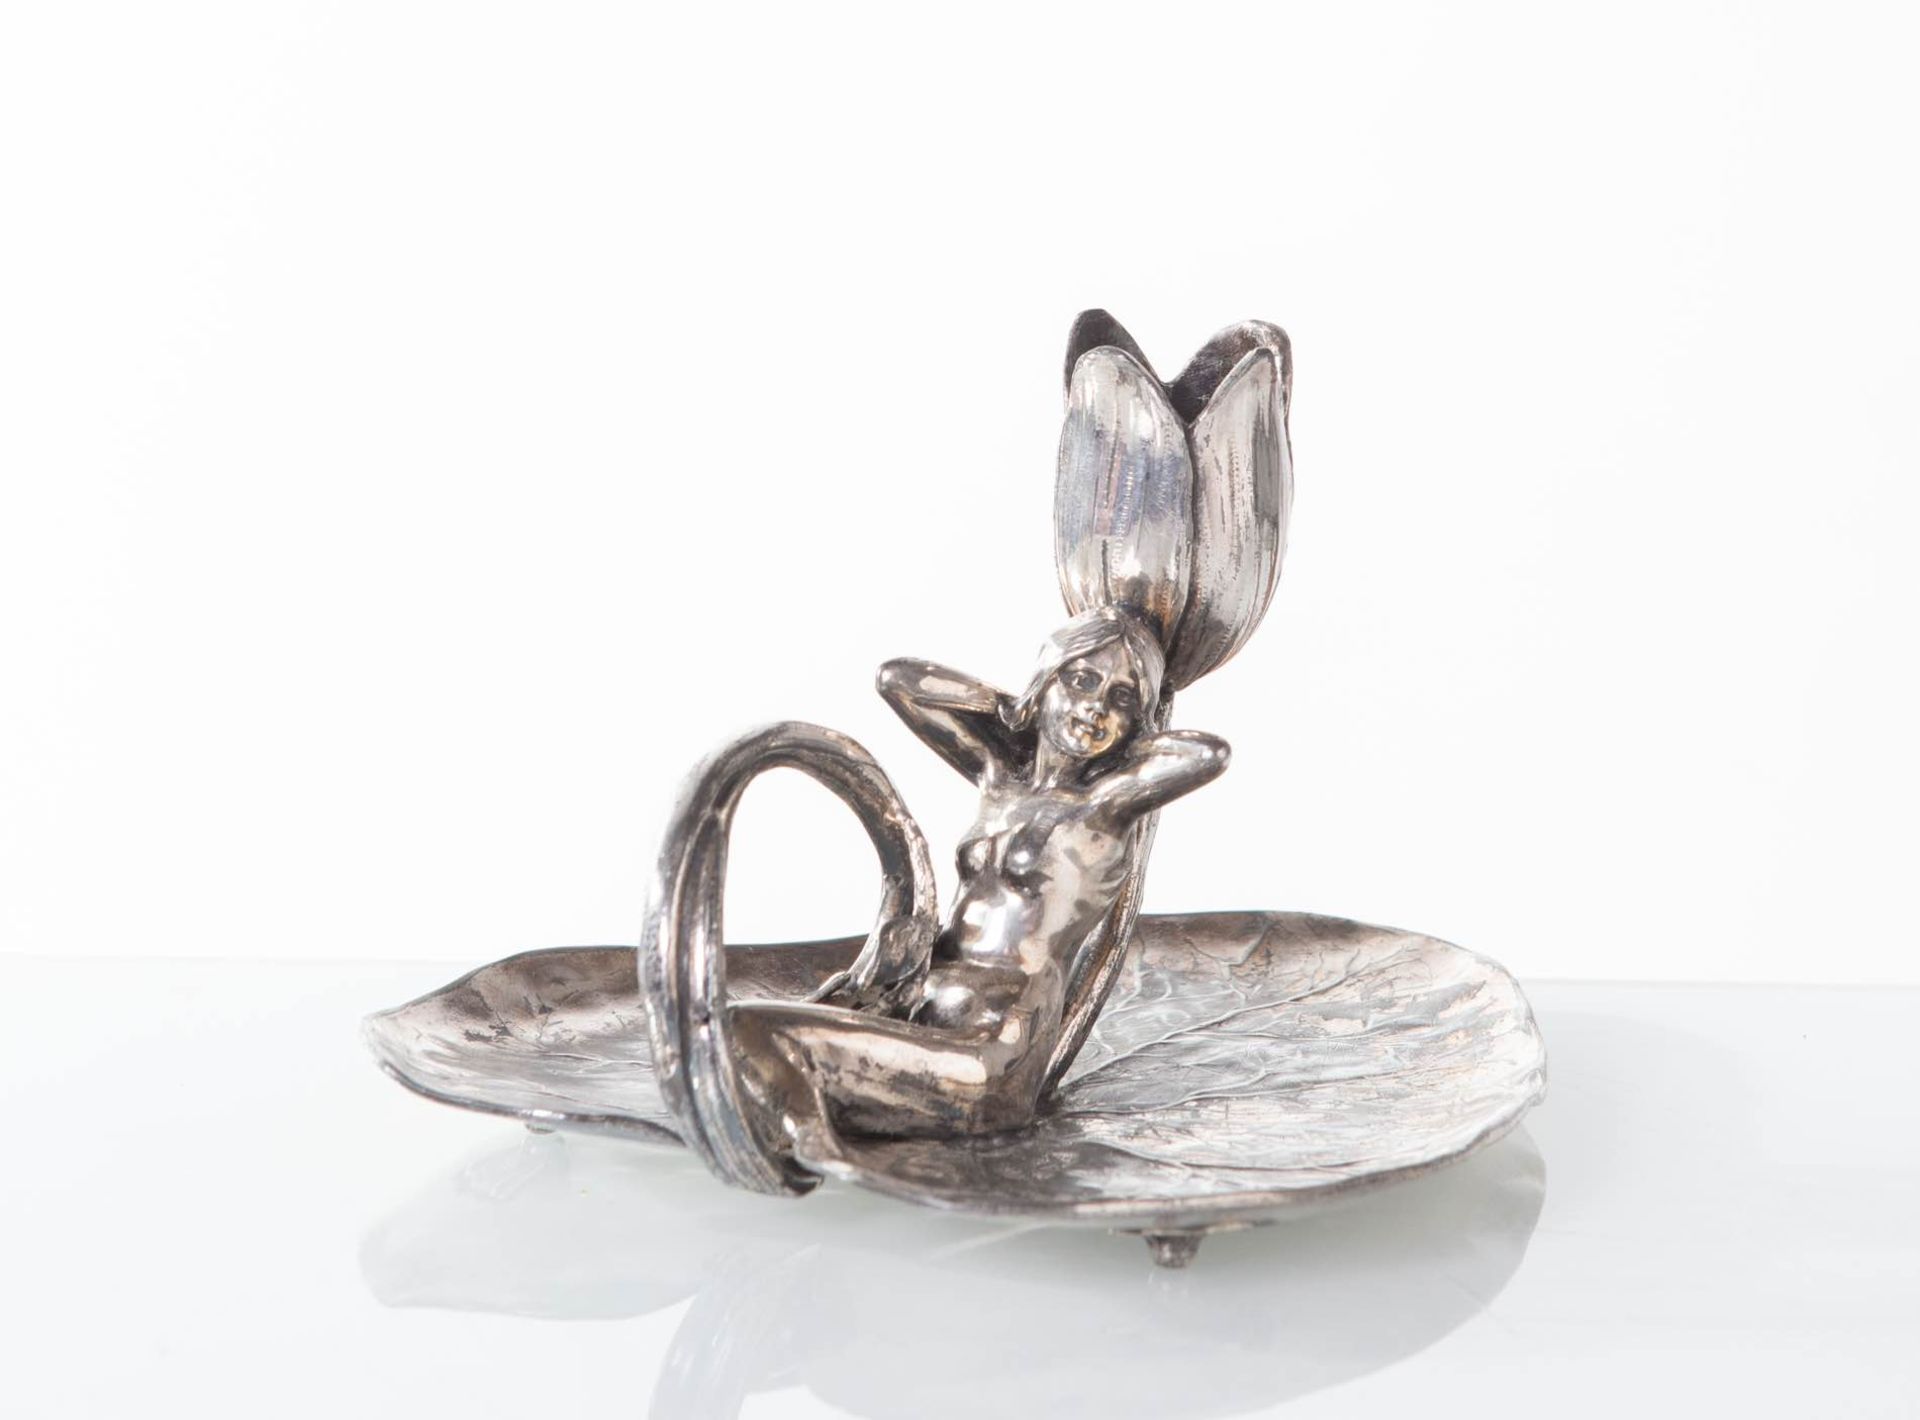 Manifattura Tedesca - Inizio del XX secolo, Bugia di gusto Art Nouveau in metallo argentato.